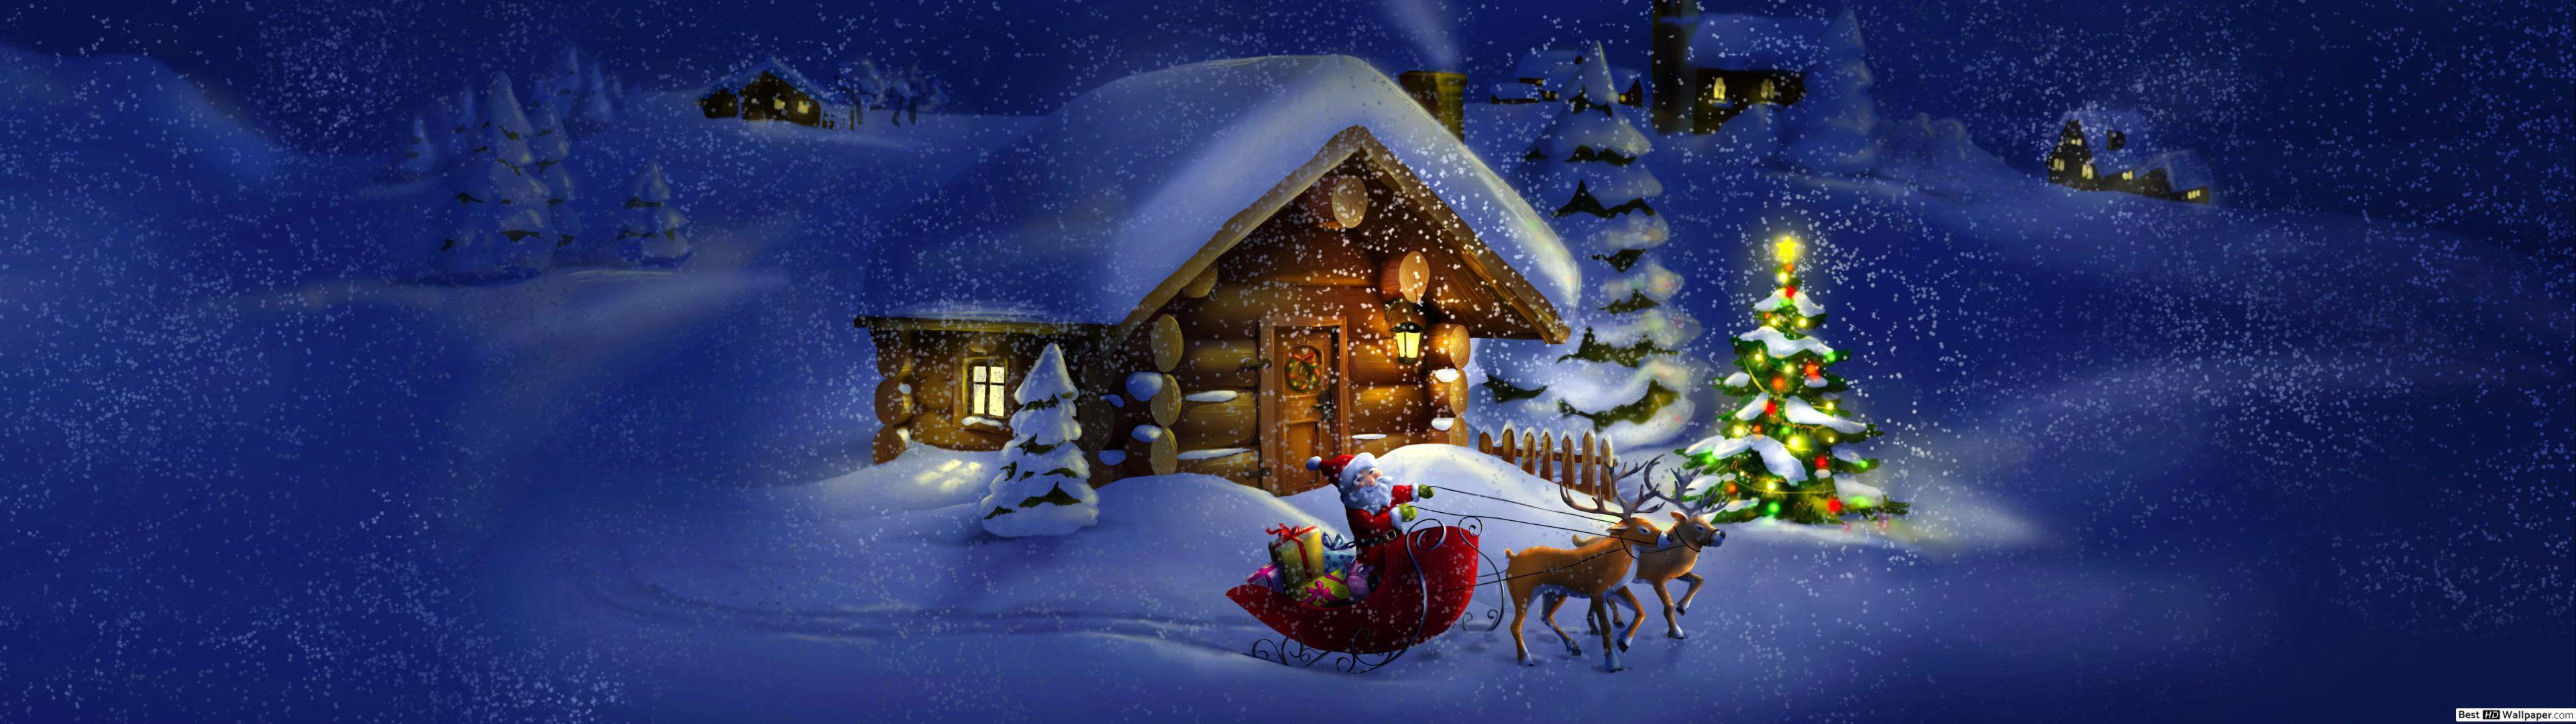 3840x1080 Christmas Wallpapers - Top Free 3840x1080 Christmas